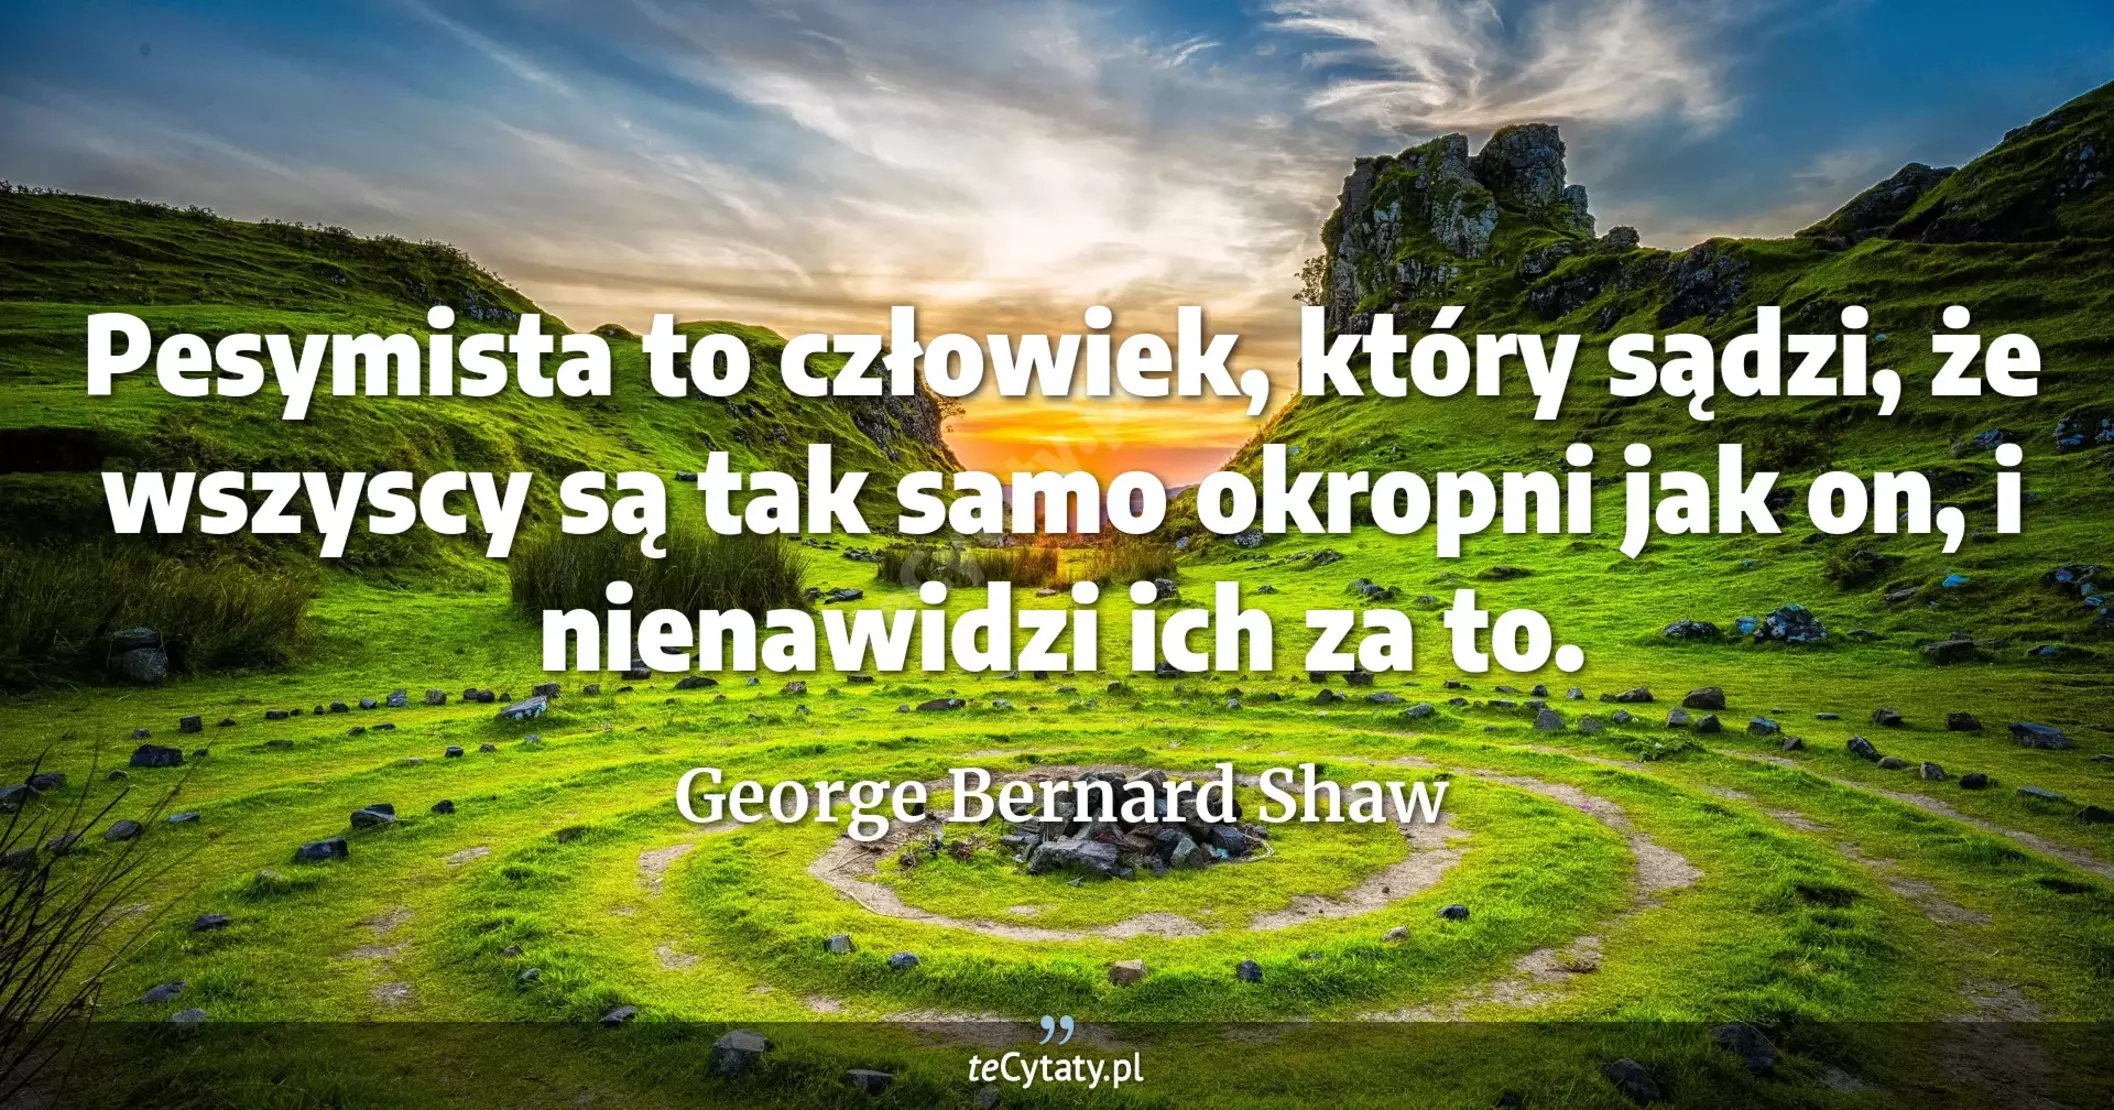 Pesymista to człowiek, który sądzi, że wszyscy są tak samo okropni jak on, i nienawidzi ich za to. - George Bernard Shaw